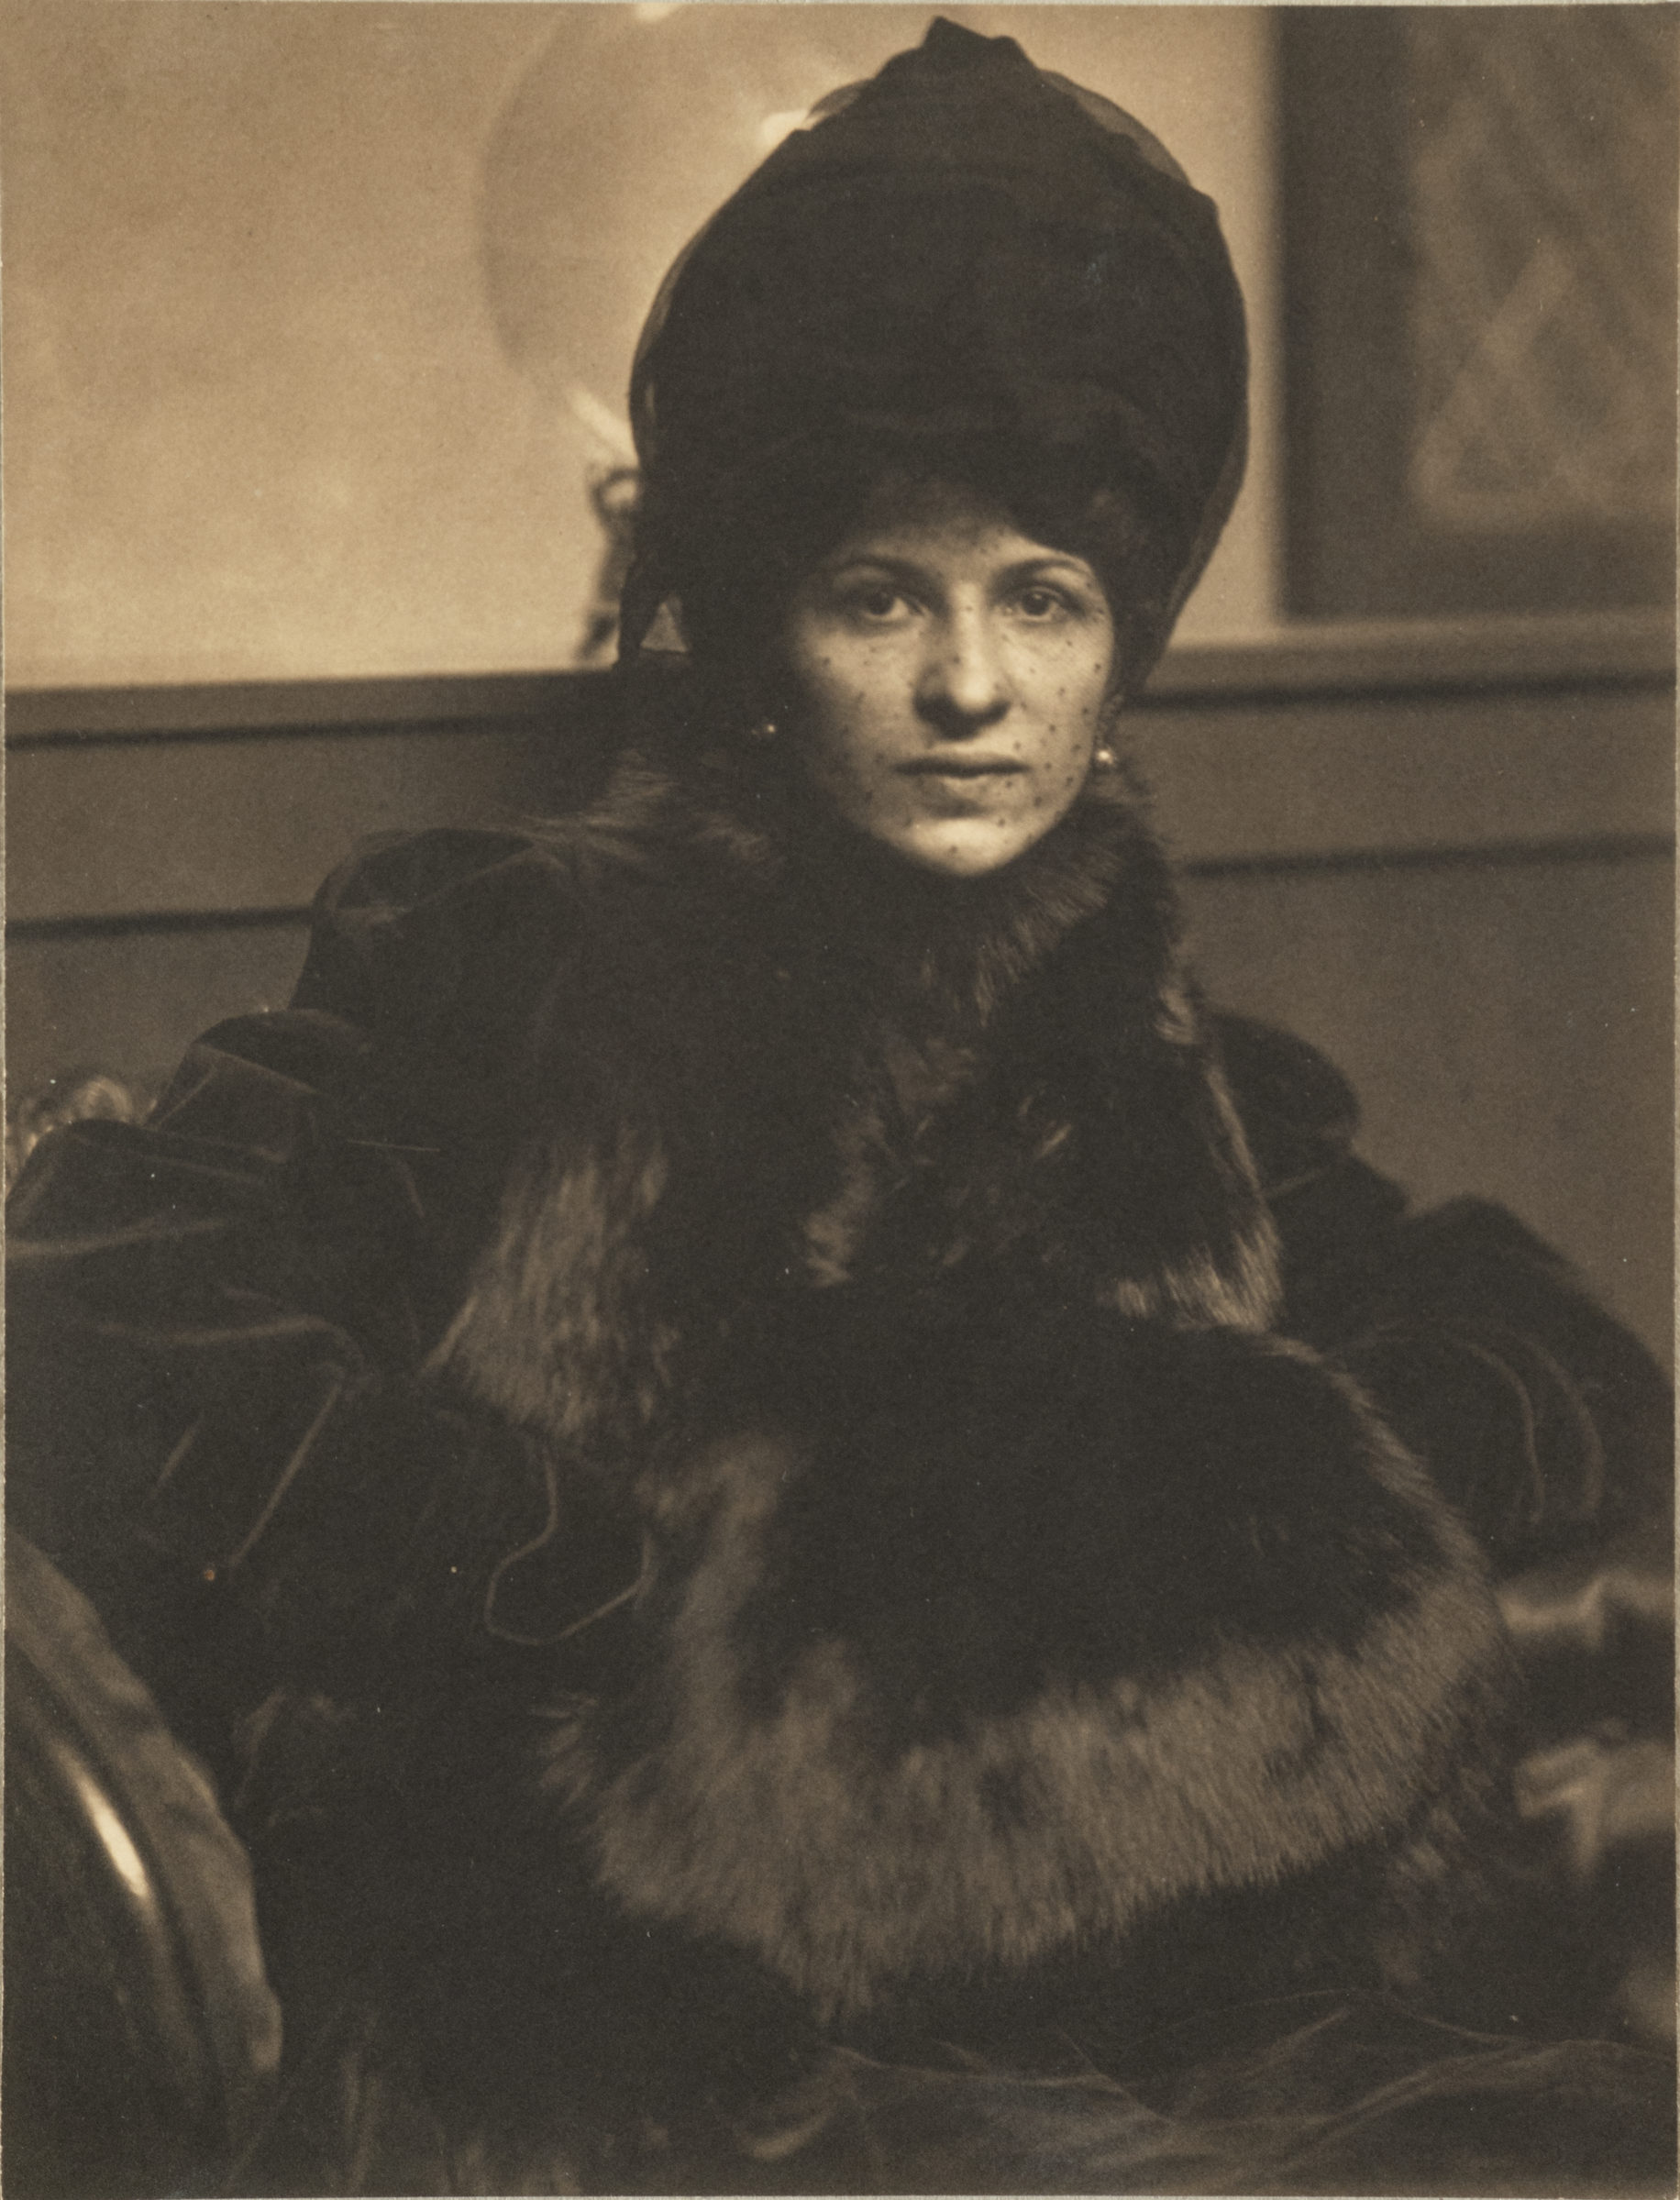 율러비 딕스의 초상화 (Portrait of Eulabee Dix) by Gertrude Käsebier - 1910년 경 - 7 7/8 x 6 in 